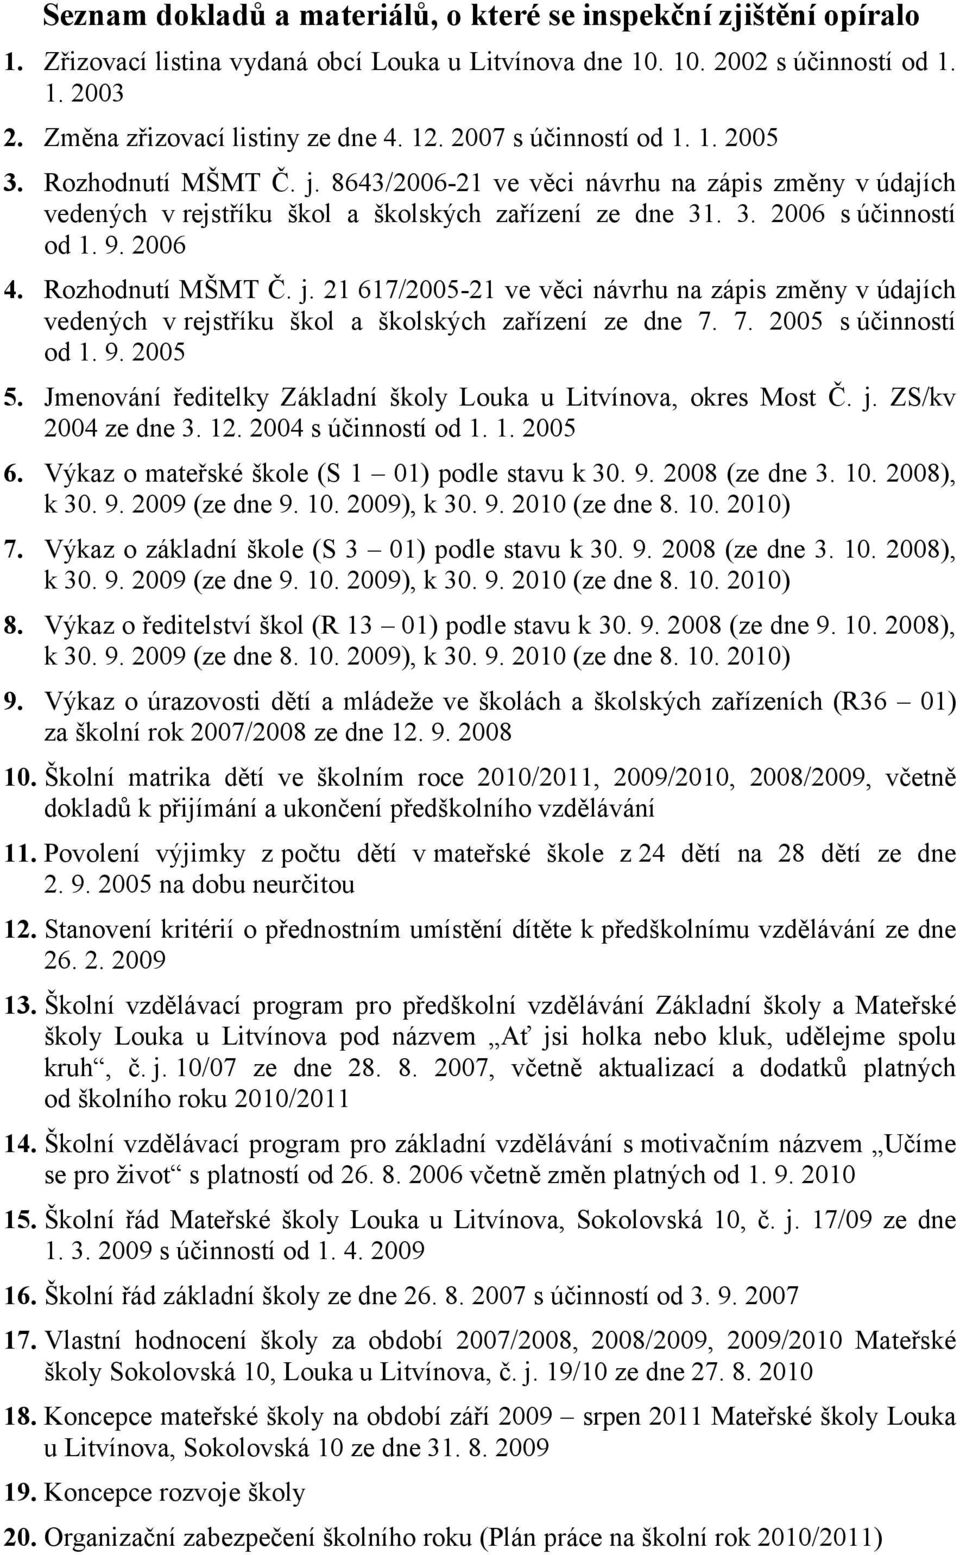 2006 4. Rozhodnutí MŠMT Č. j. 21 617/2005-21 ve věci návrhu na zápis změny v údajích vedených v rejstříku škol a školských zařízení ze dne 7. 7. 2005 s účinností od 1. 9. 2005 5.